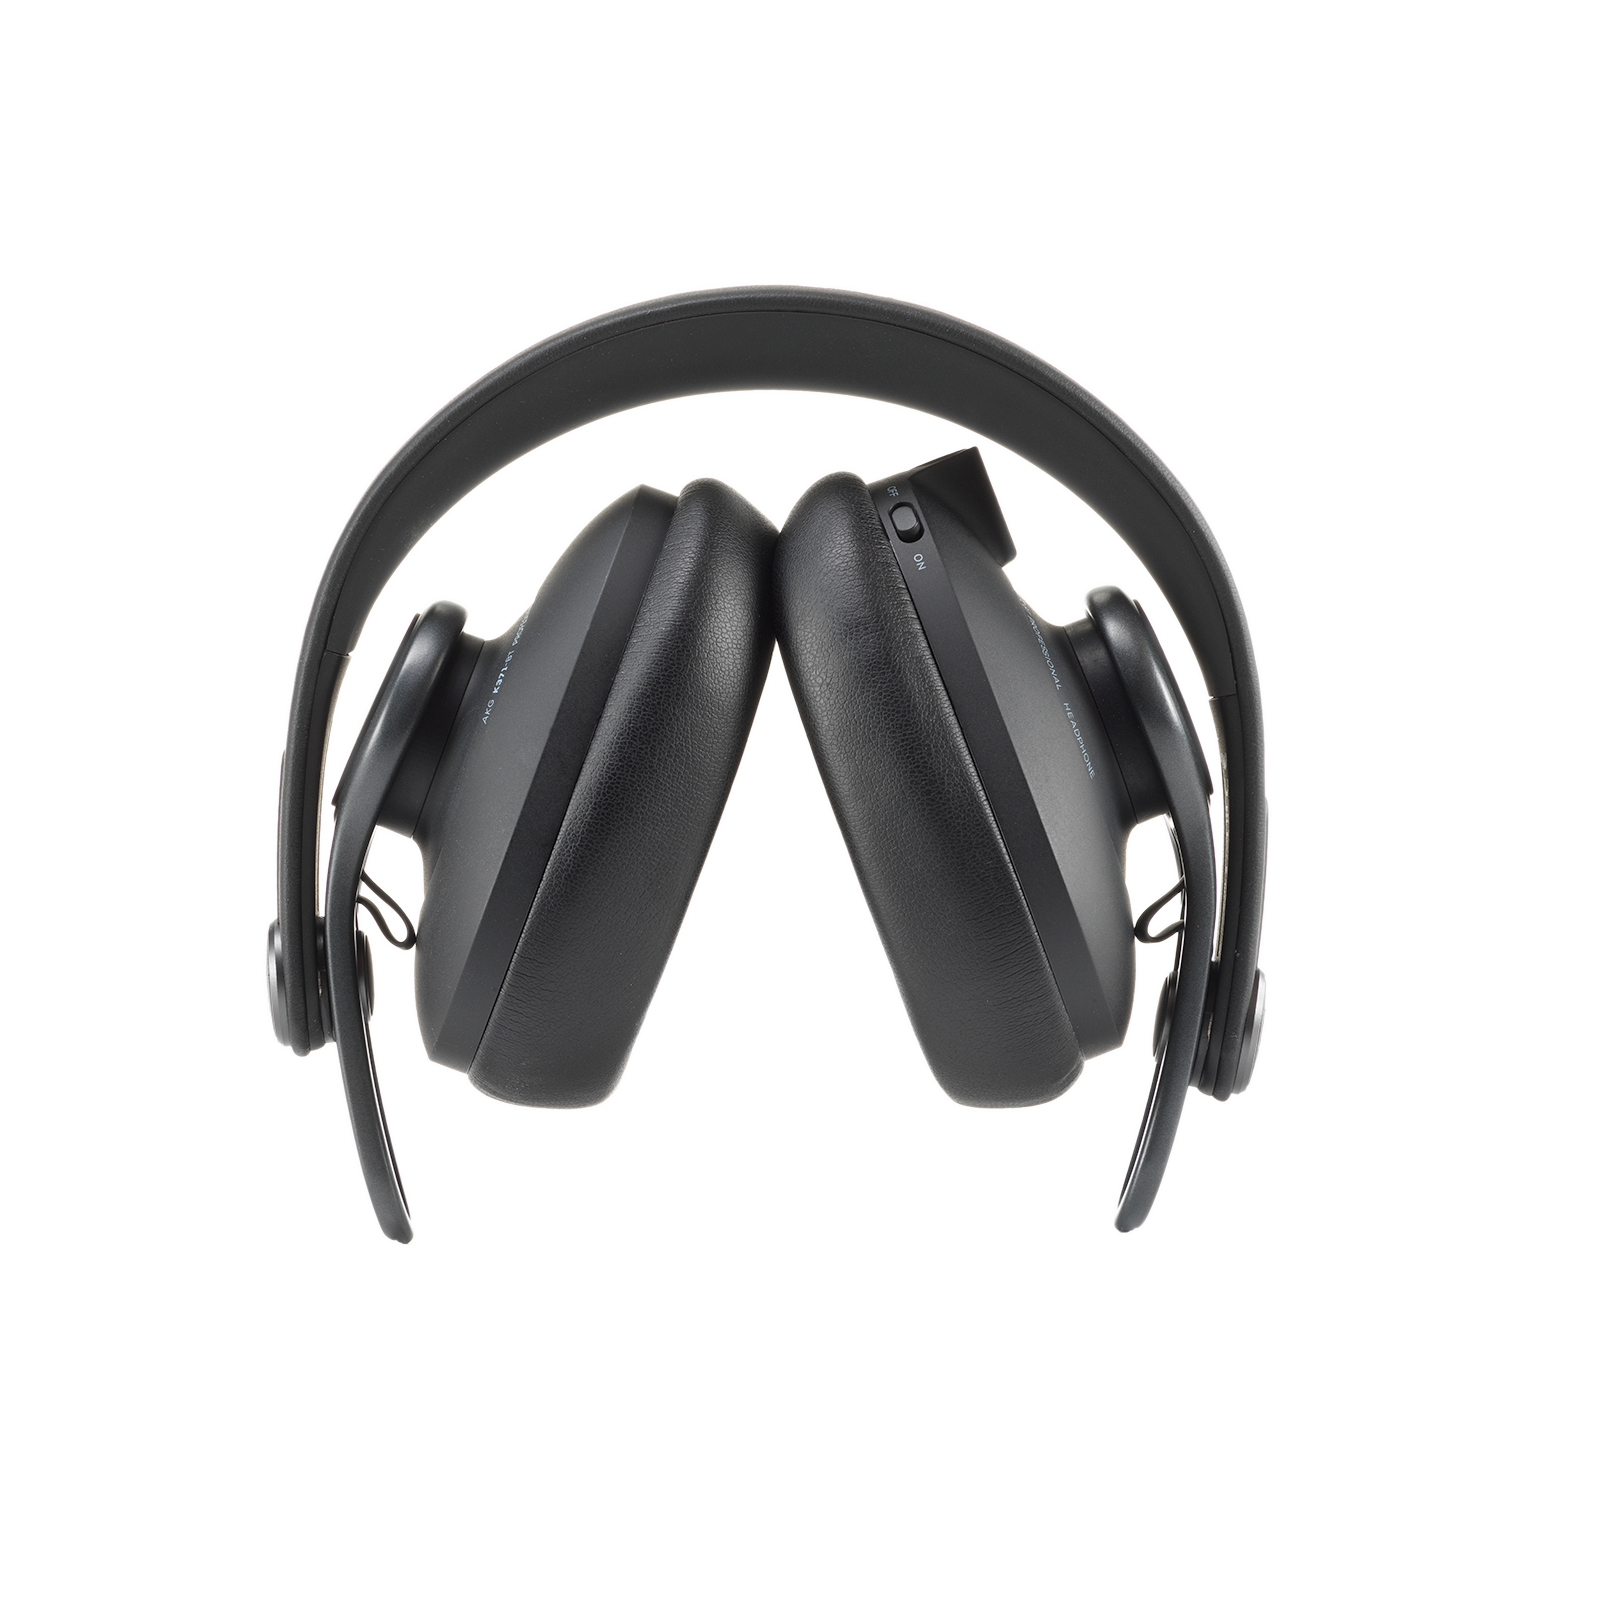 K371-BT - Black - Over-ear, closed-back, foldable studio headphones with Bluetooth - Detailshot 1